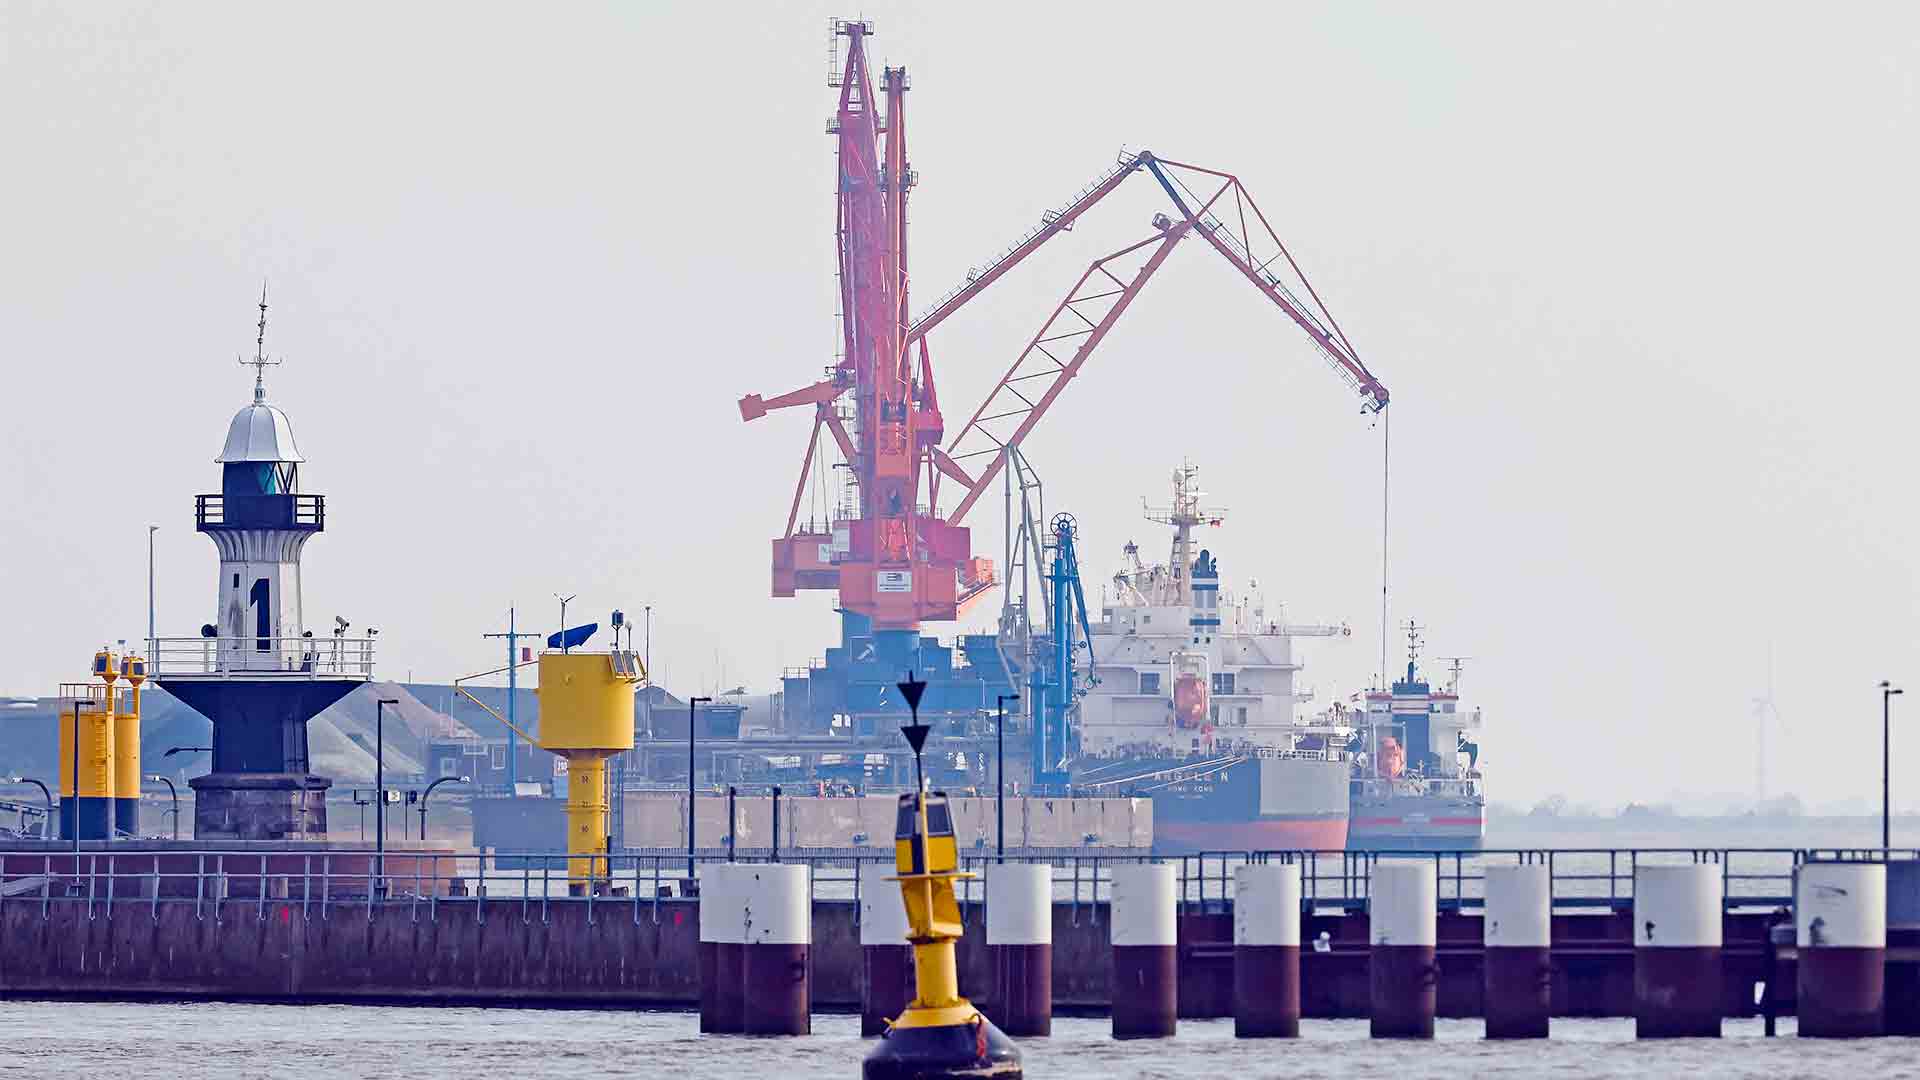 Möglicher Standort für LNG-Terminal Hafen Brunsbüttel | picture alliance/dpa